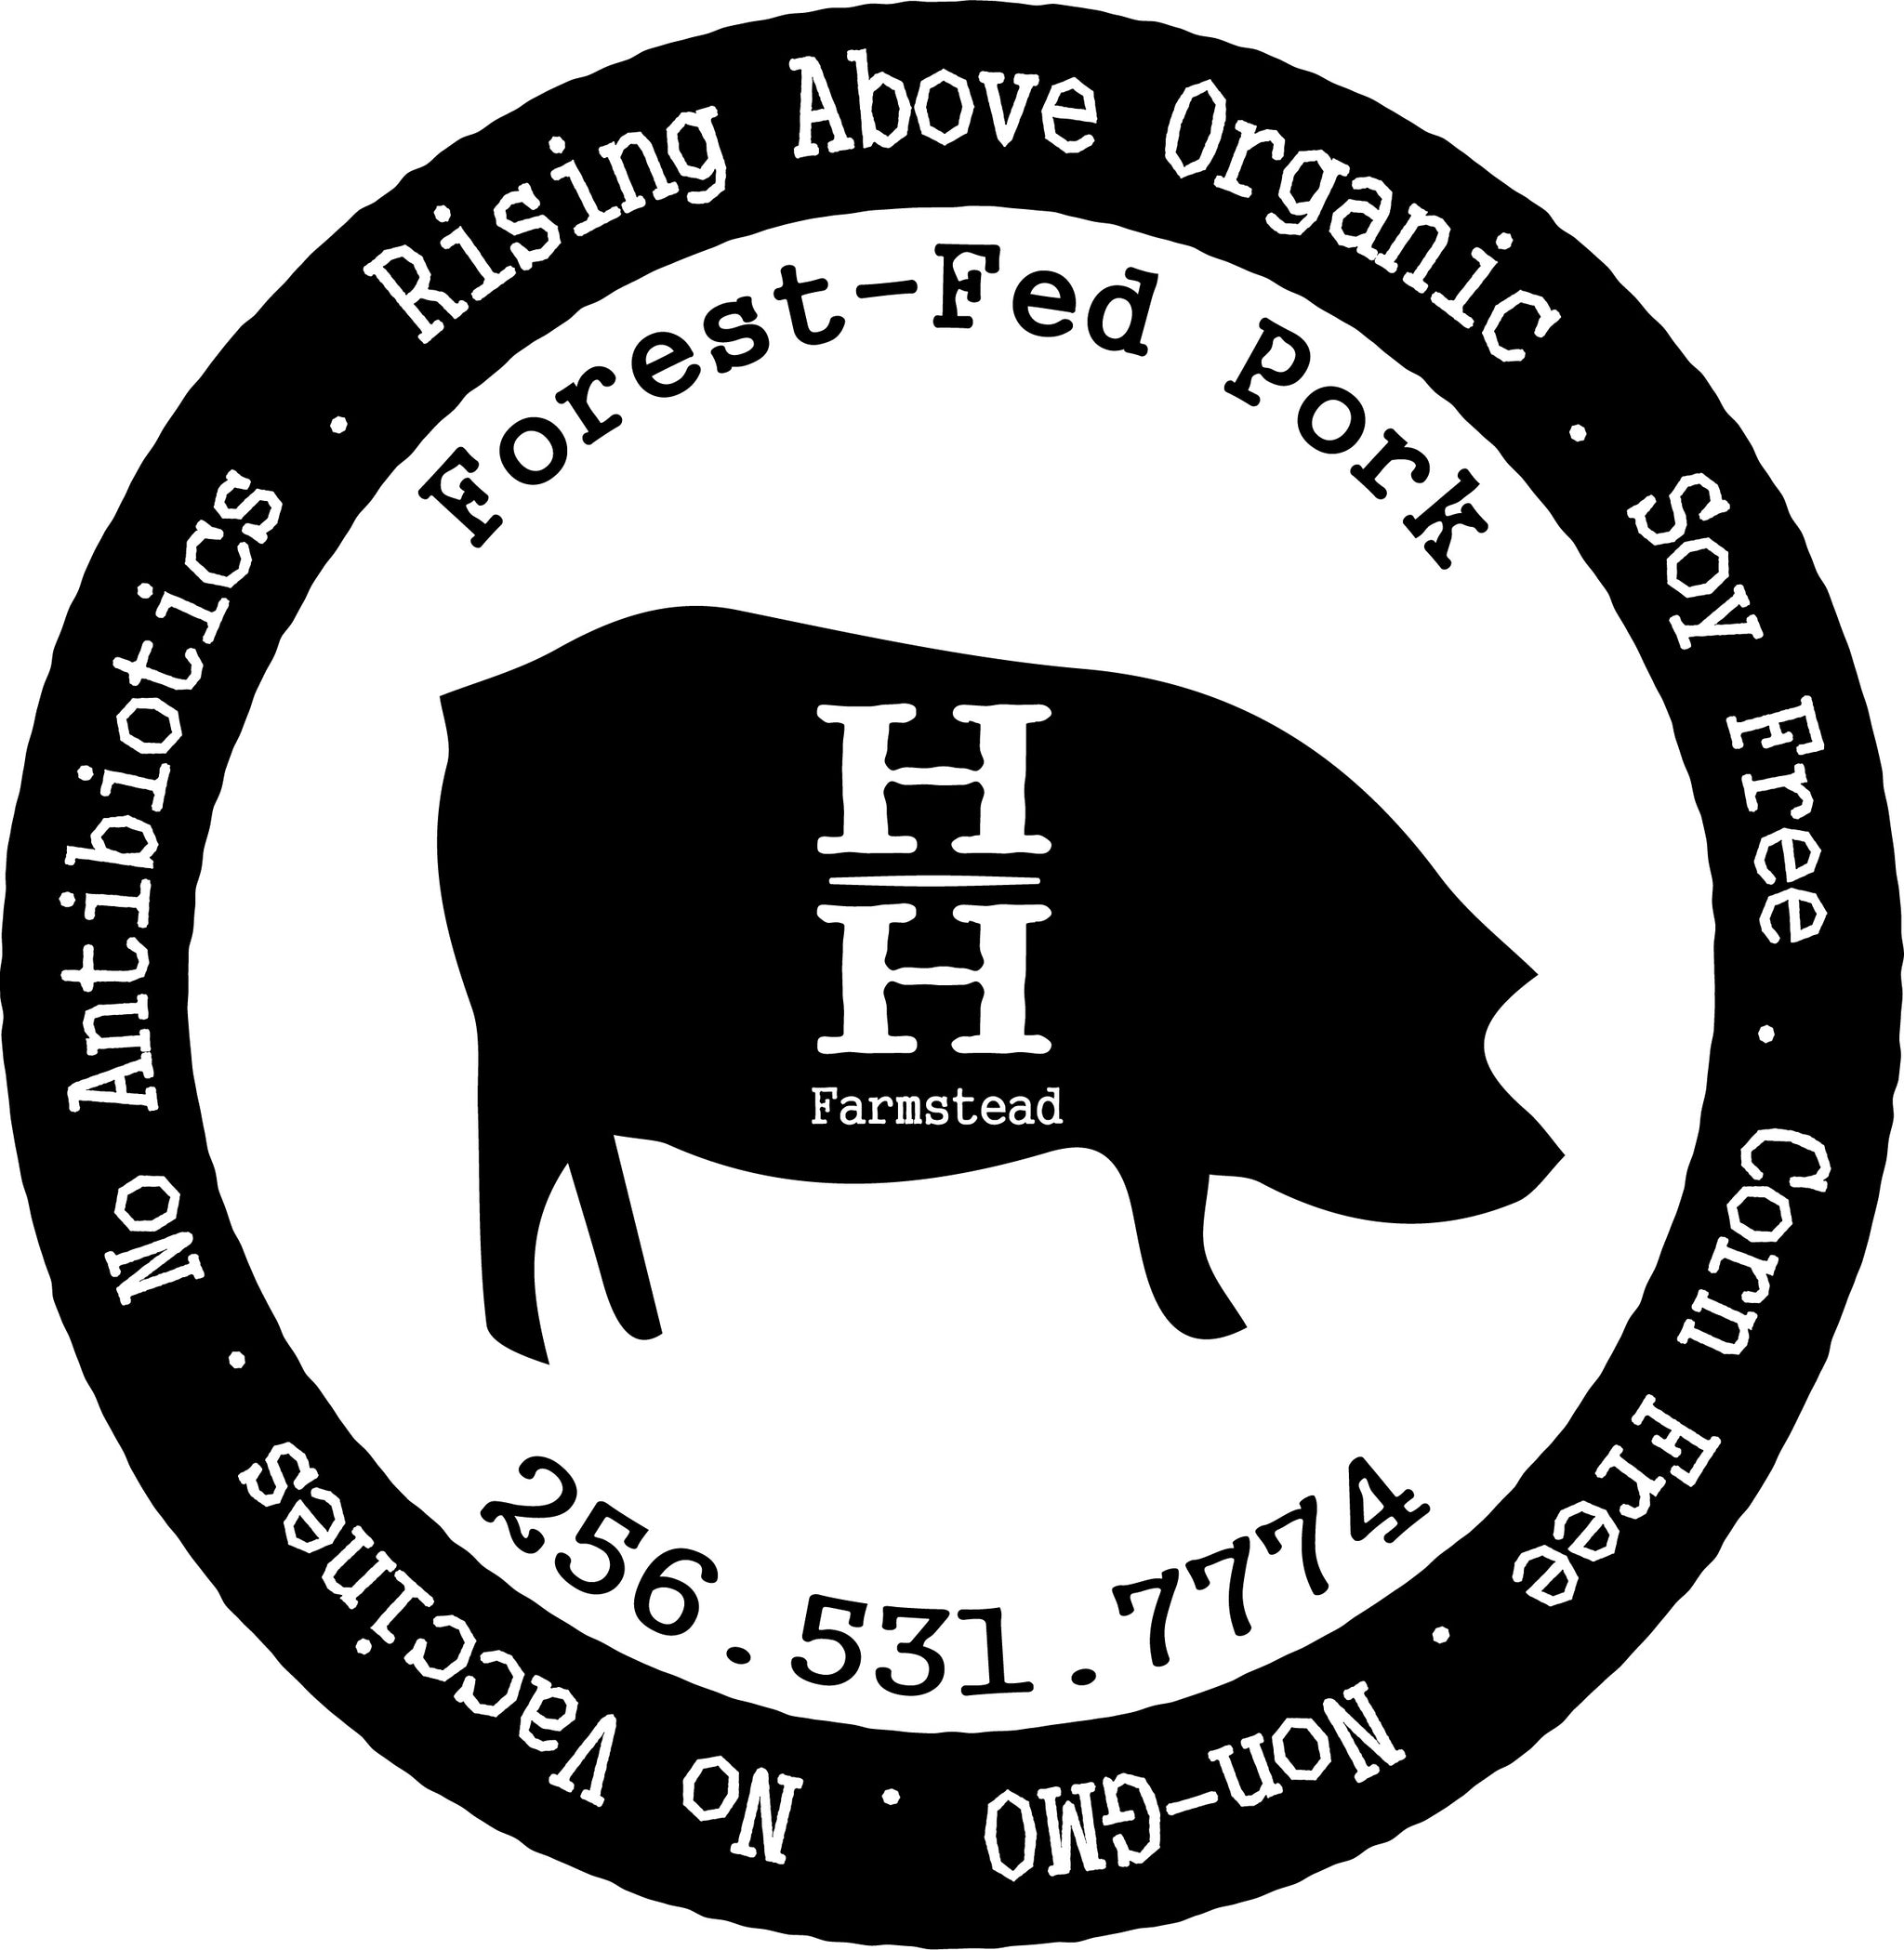 Forest-Fed Heritage Pork